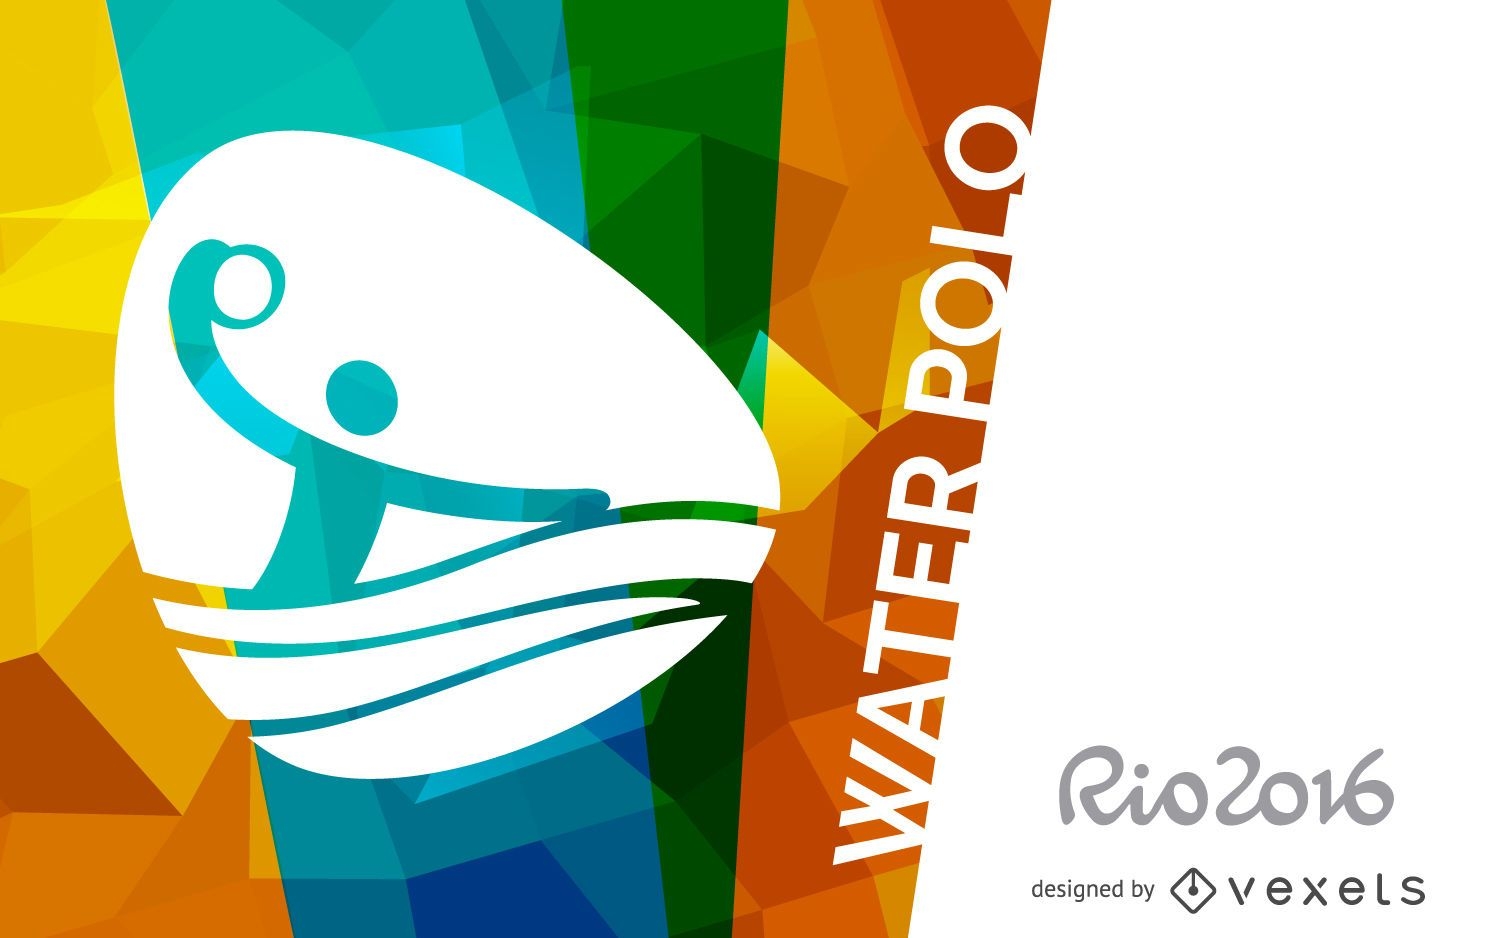 Rio 2016 water polo poster